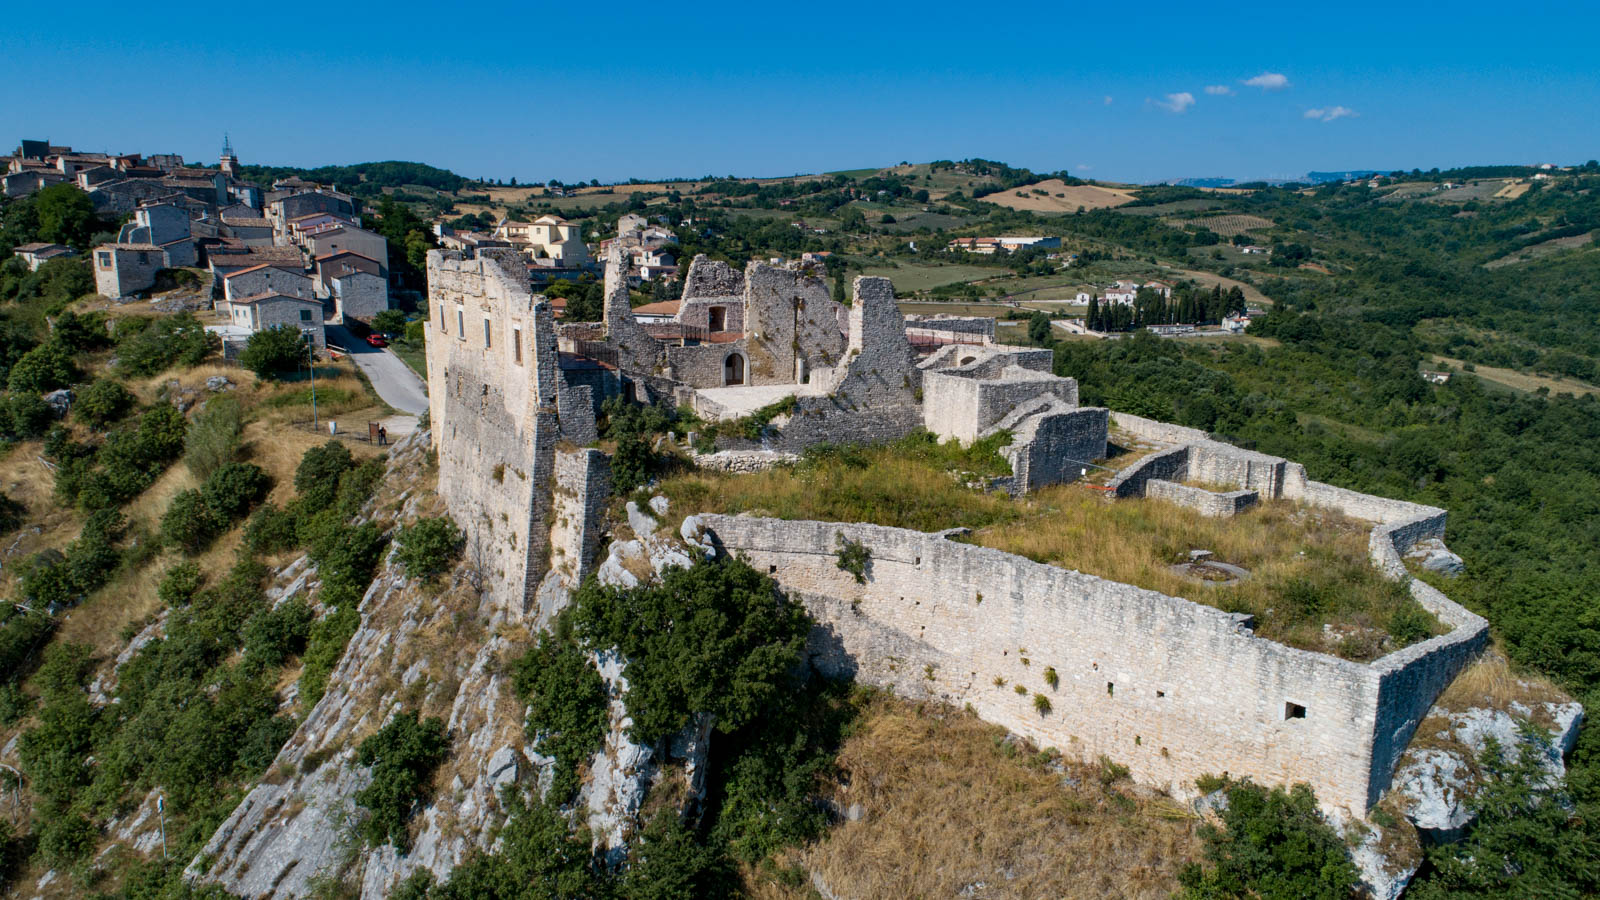 Castropignano a fost construit pe ruinele unei localități antice, Samnites, teatru de bătălie între vechile popoare italice și romani